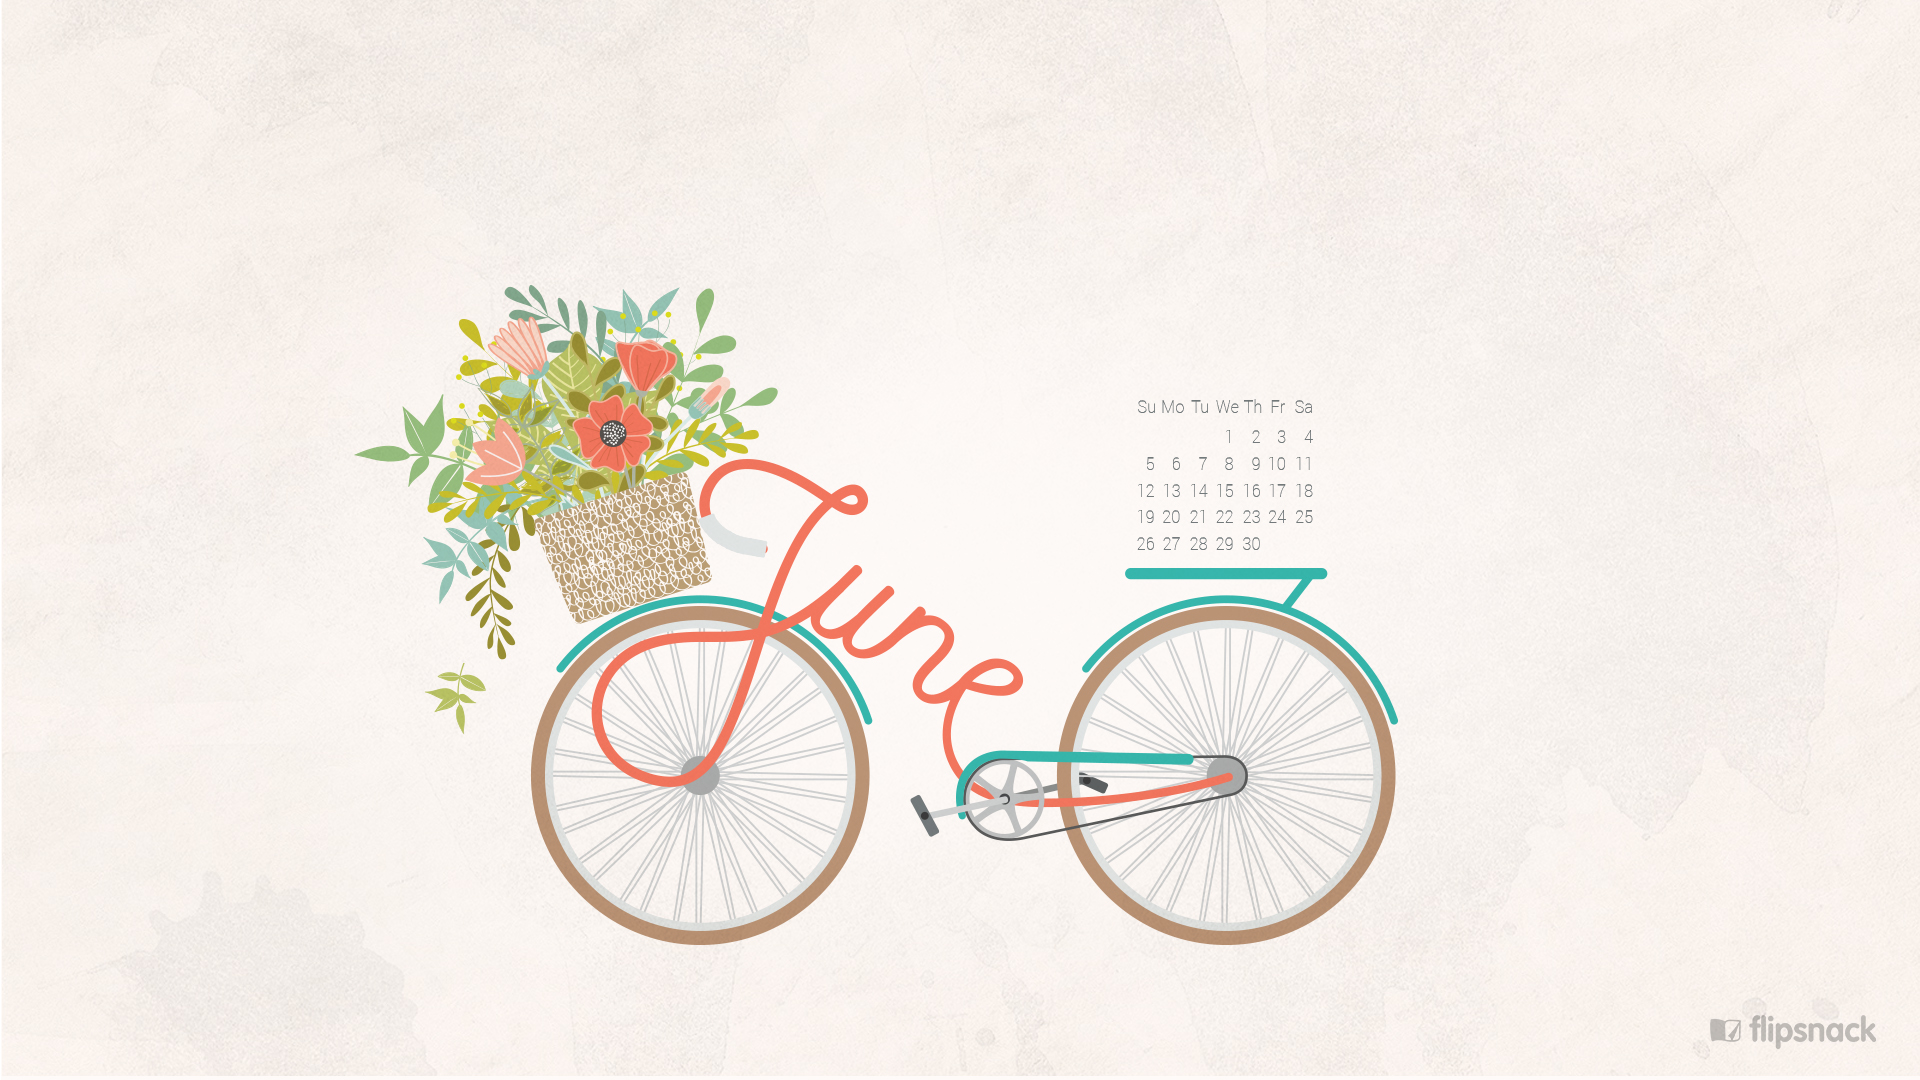 Скачать обои бесплатно Цветок, Разное, Велосипед, Календарь картинка на рабочий стол ПК